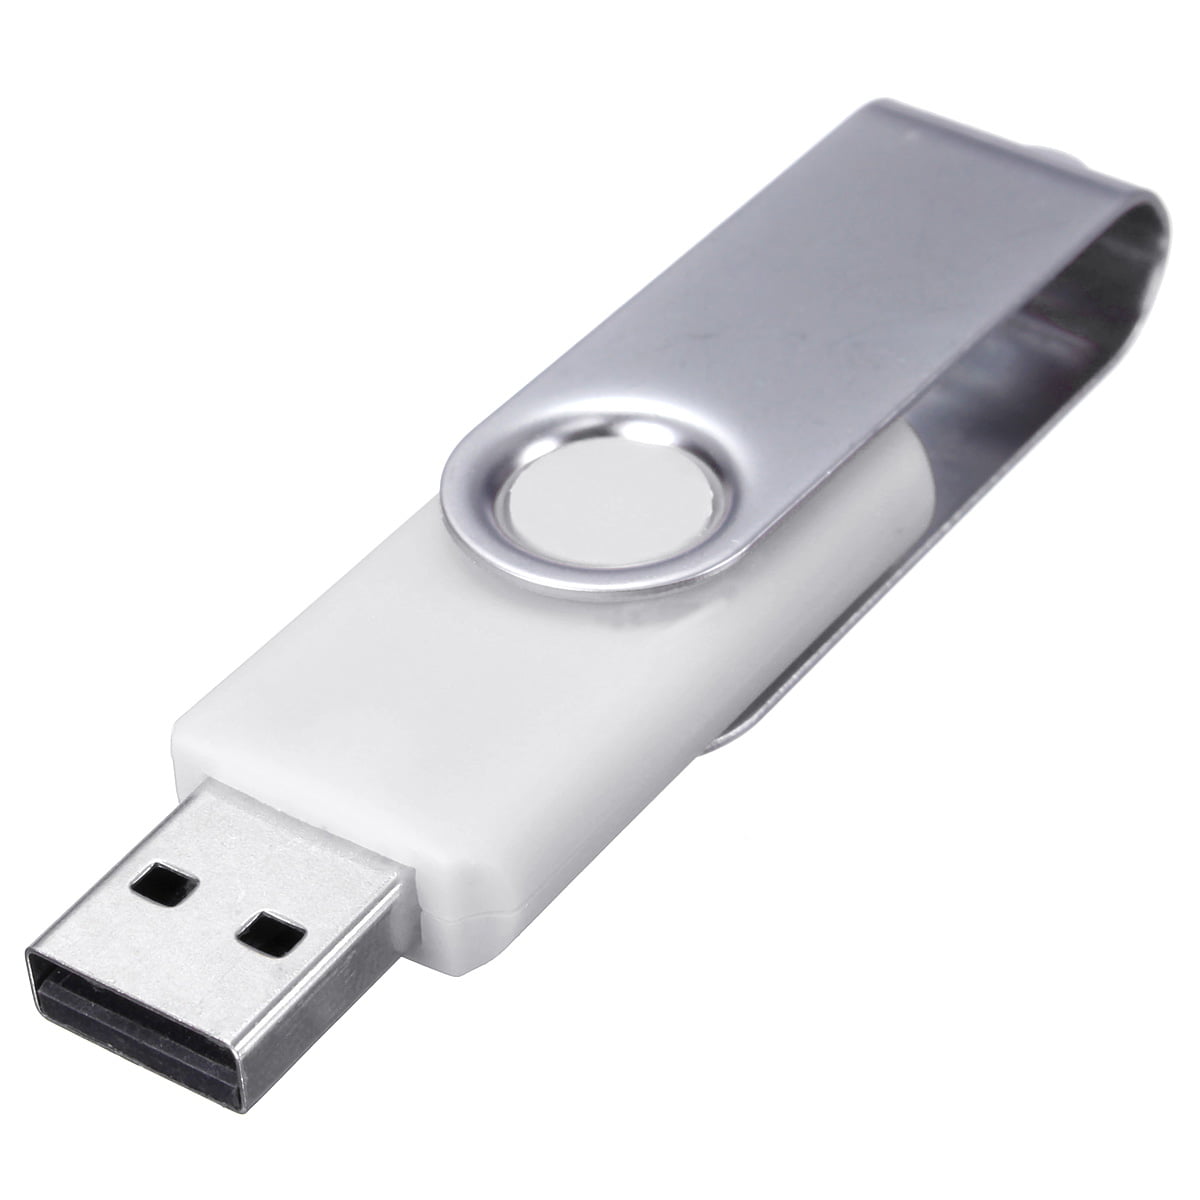 Tarjeta de crédito compacta USB Flash USB 2.0 Flash Stick Pen Drive Memory Stick 